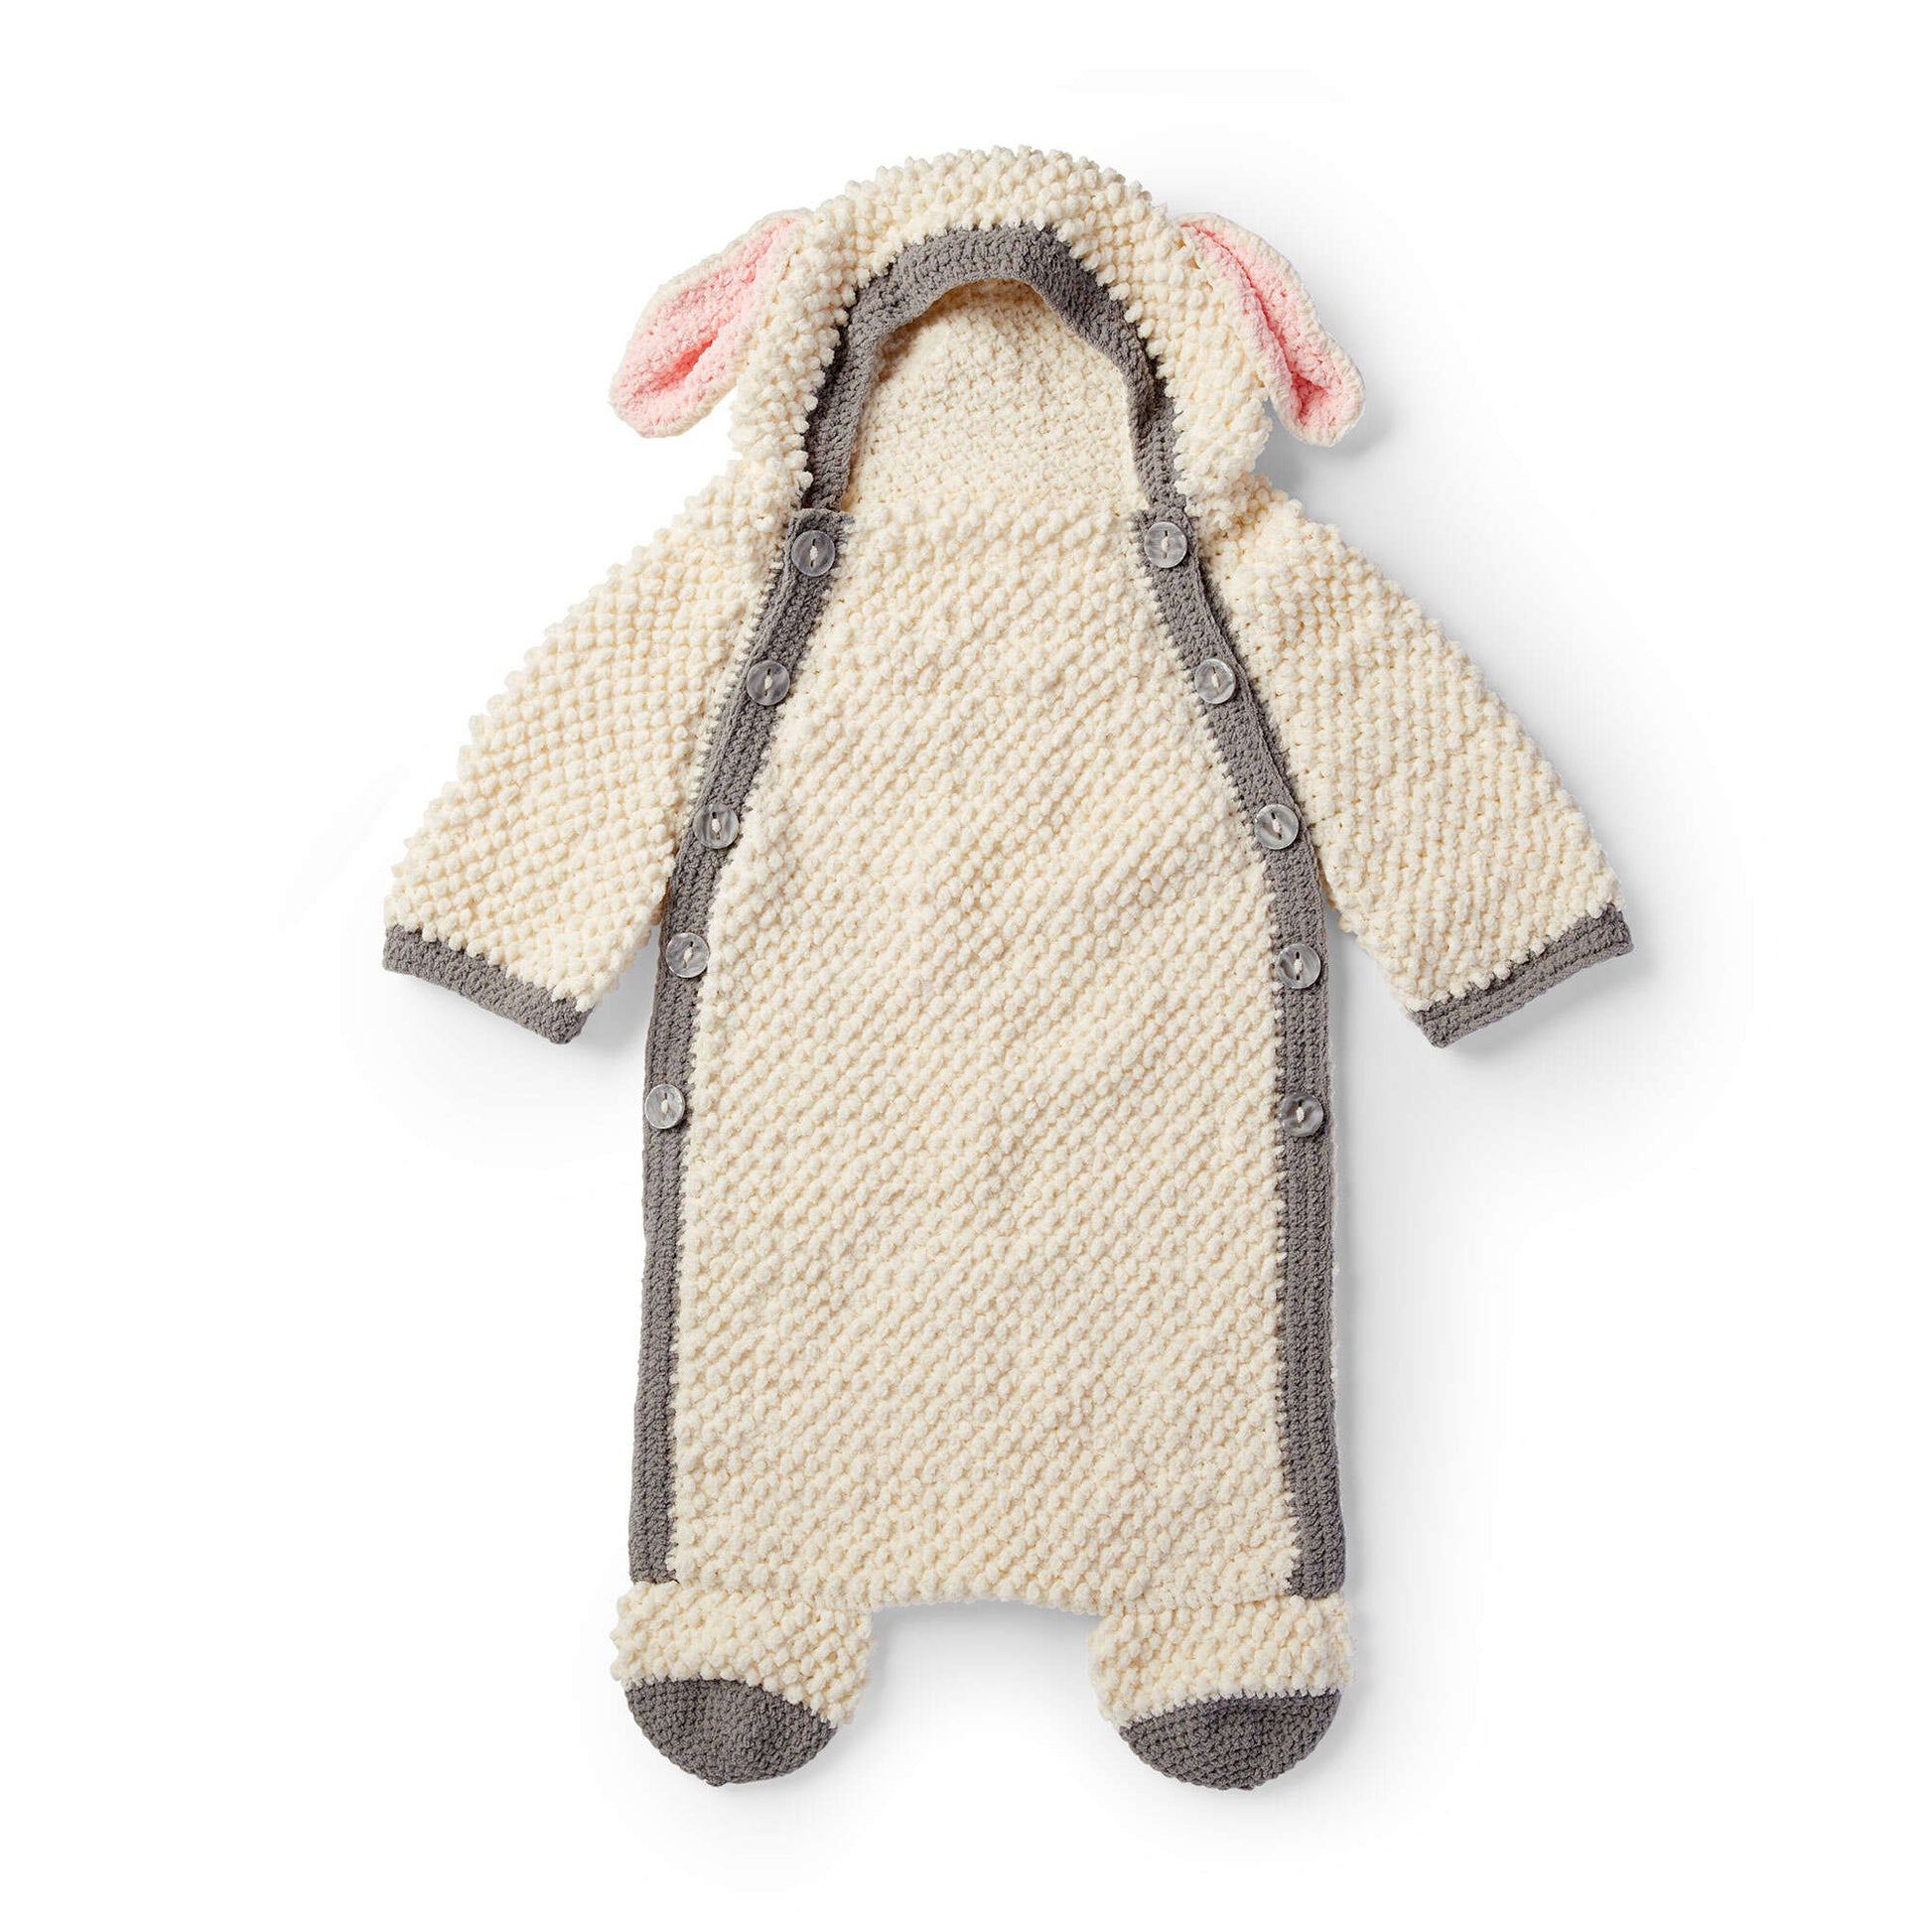 Free Bernat Yawn The Sheep Crochet Snuggle Sack Pattern